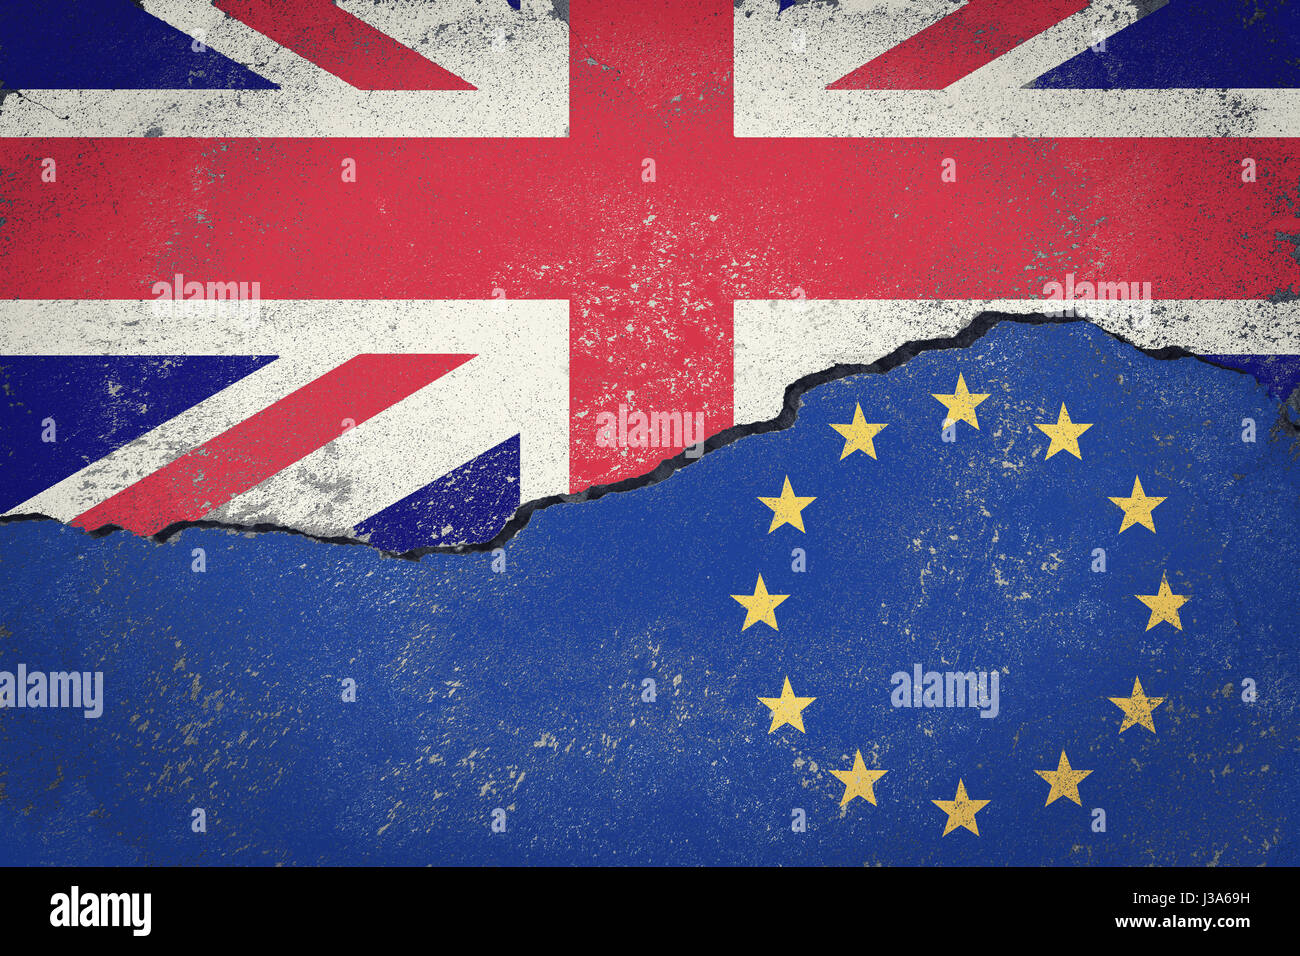 Brexit de l'Union européenne drapeau bleu de l'UE sur les brisures de mur et la moitié de la grande bretagne drapeau, voter pour Royaume-Uni concept sortie Banque D'Images